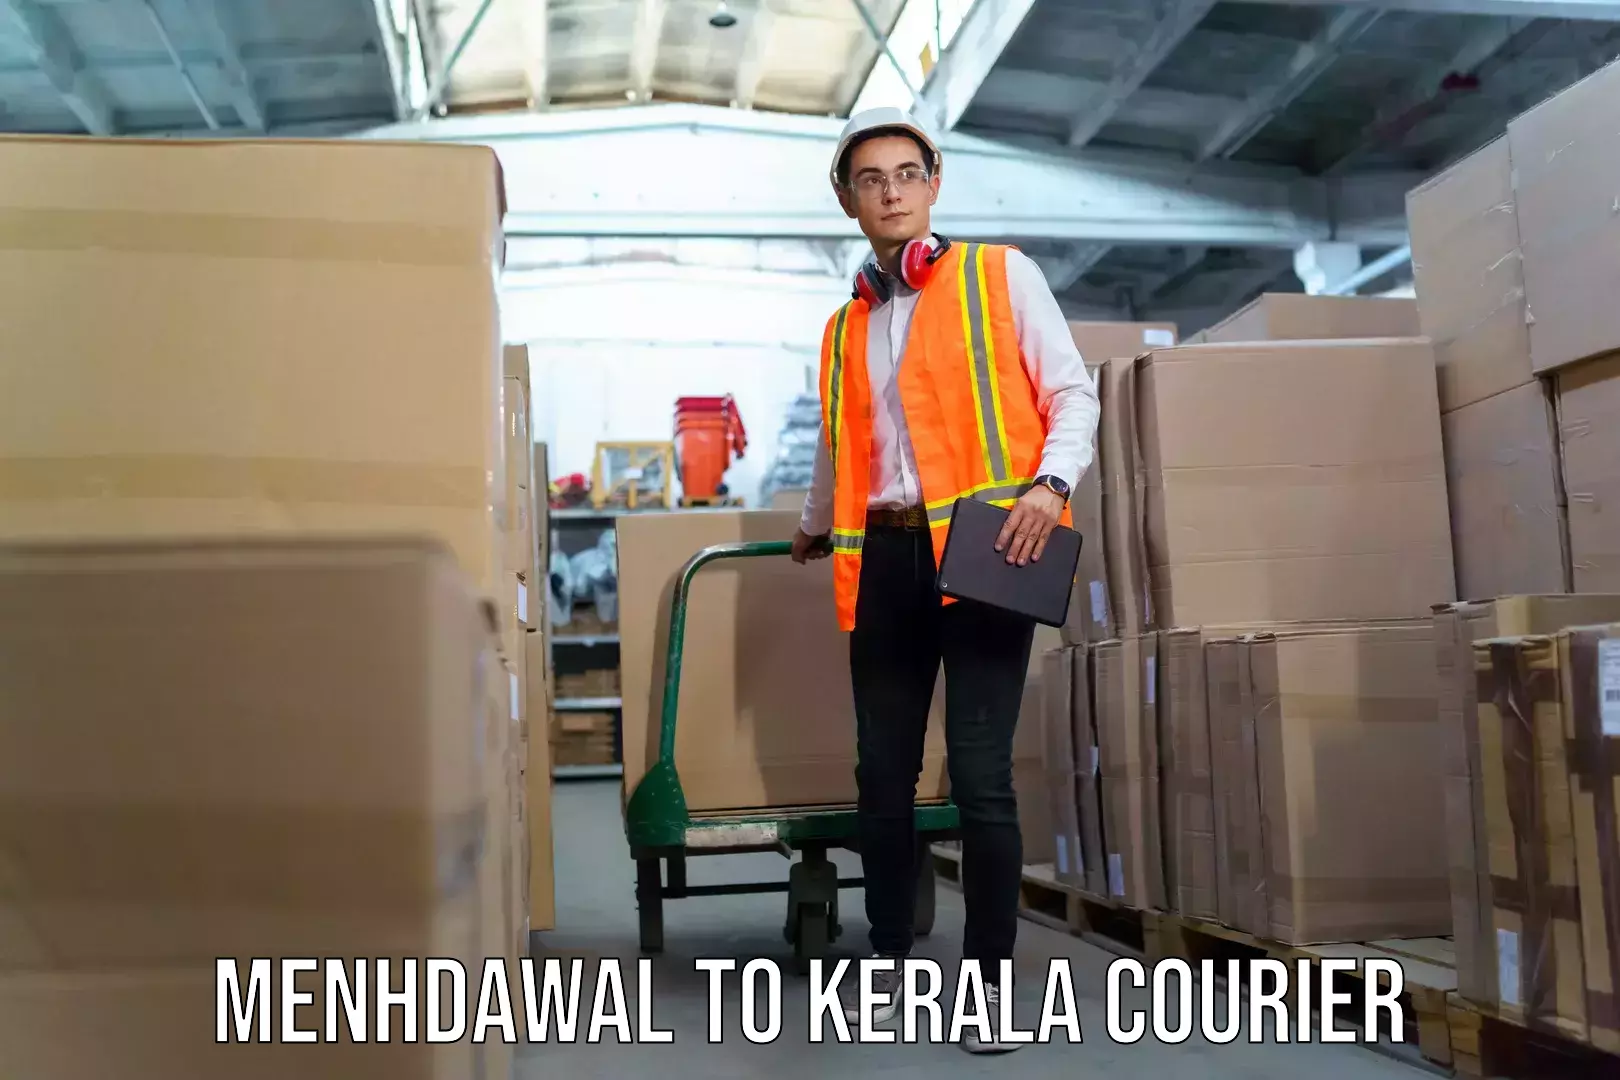 Baggage shipping service Menhdawal to Kerala